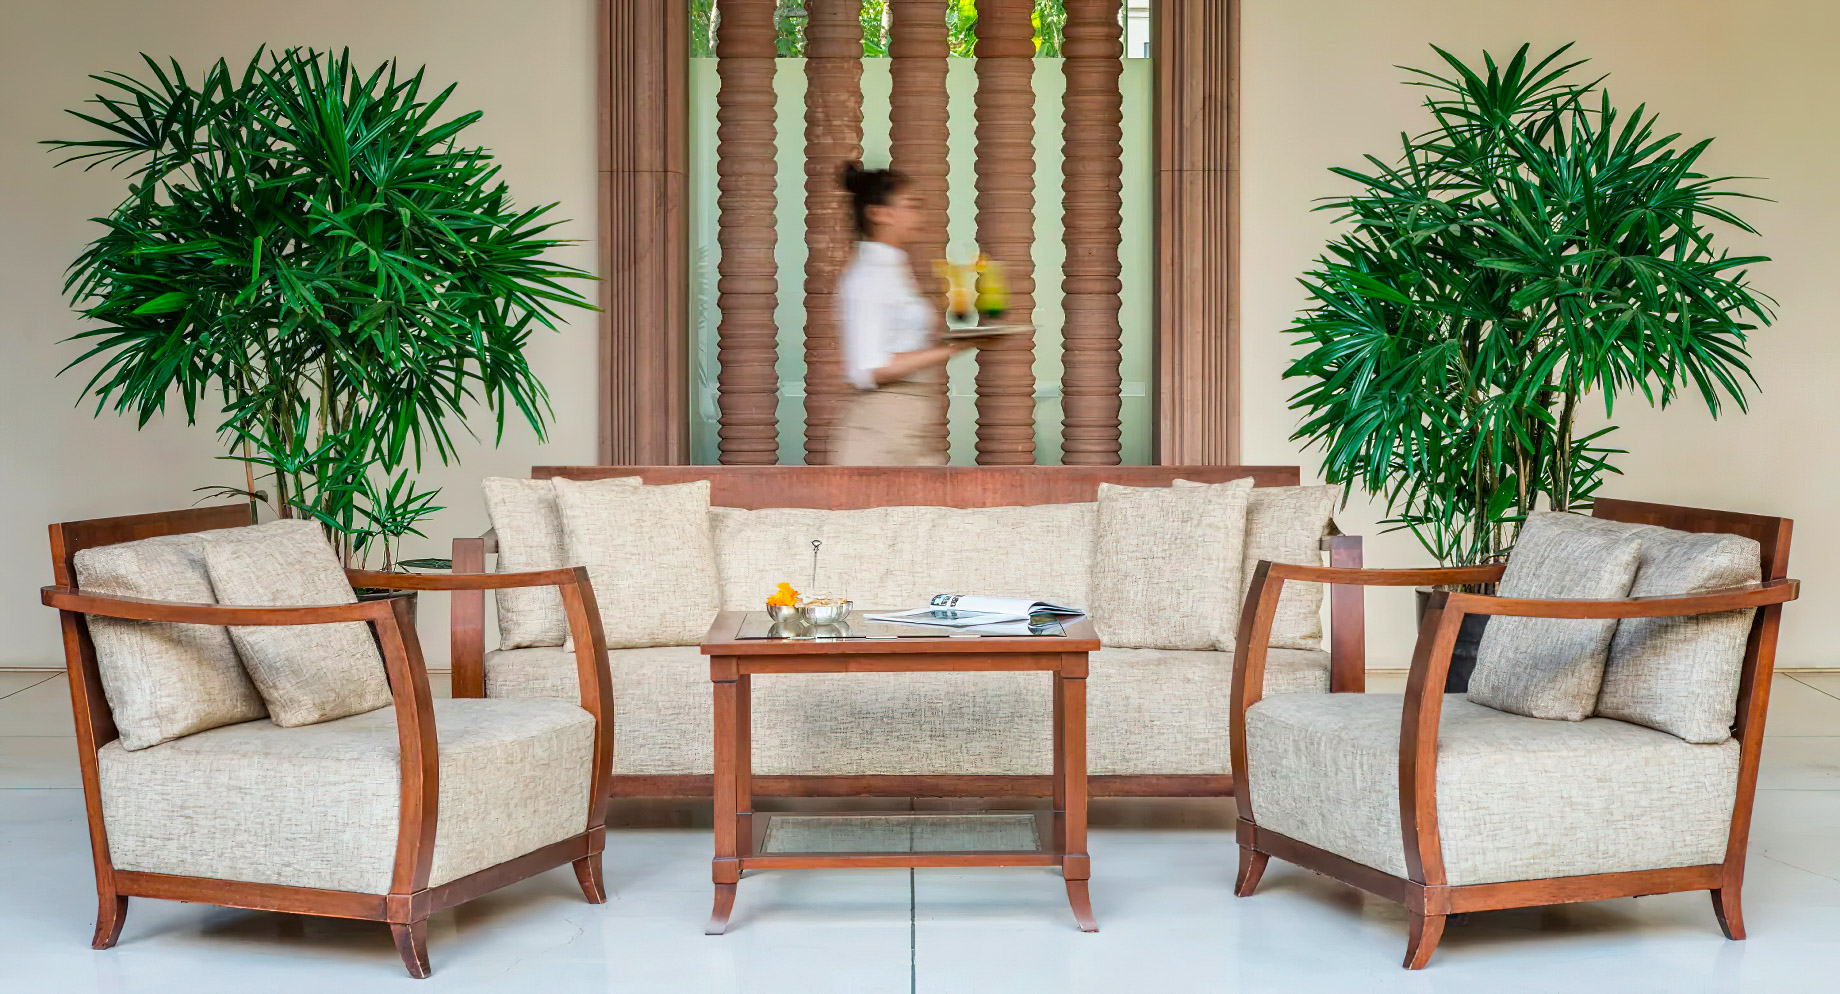 Anantara Angkor Resort – Siem Reap, Cambodia – Courtyard Lounge